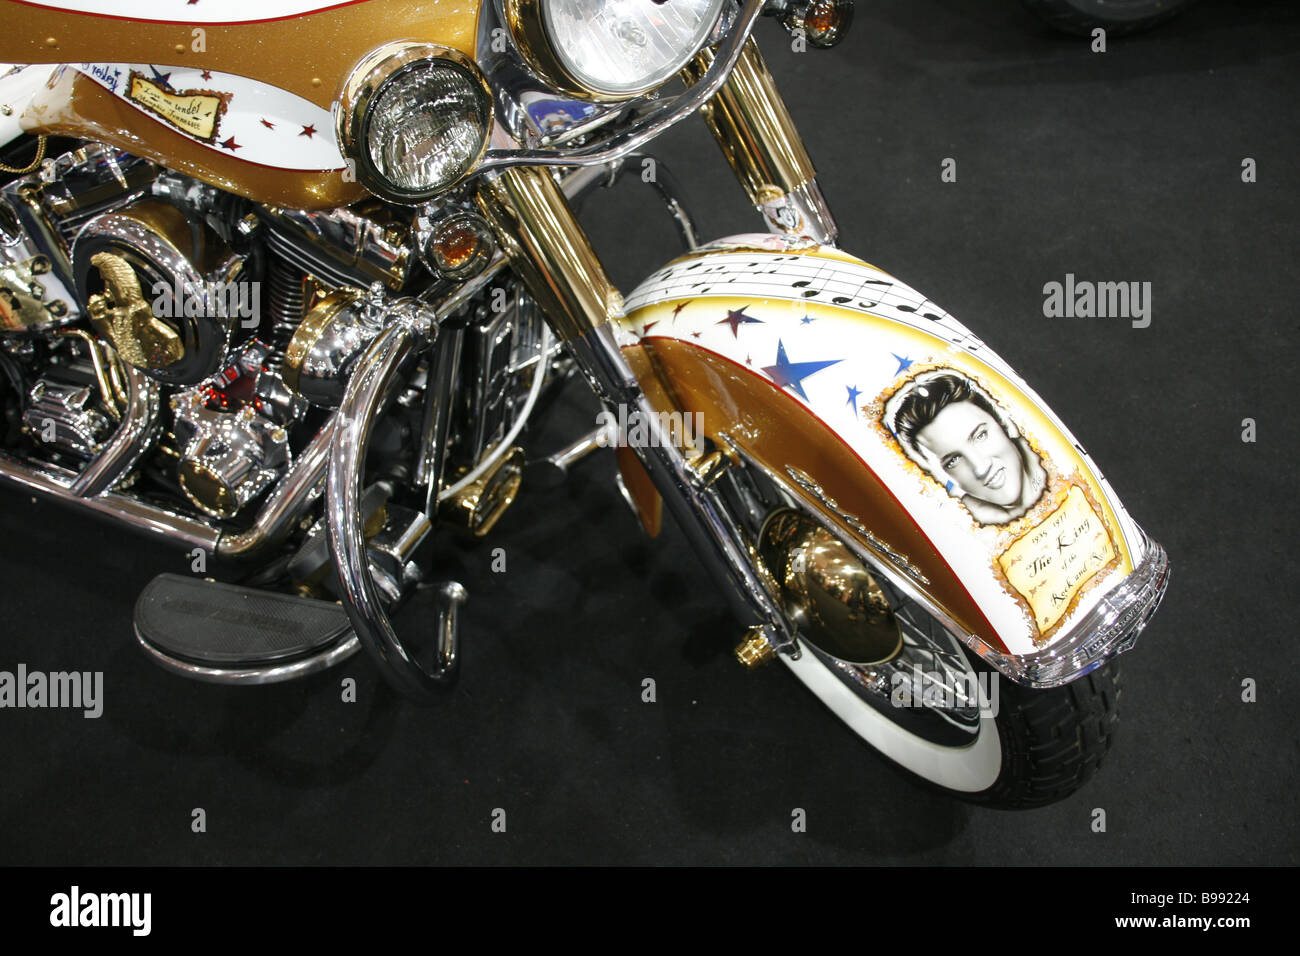 Motorcycle TAGZ Sports Elvis Presley LAMP 